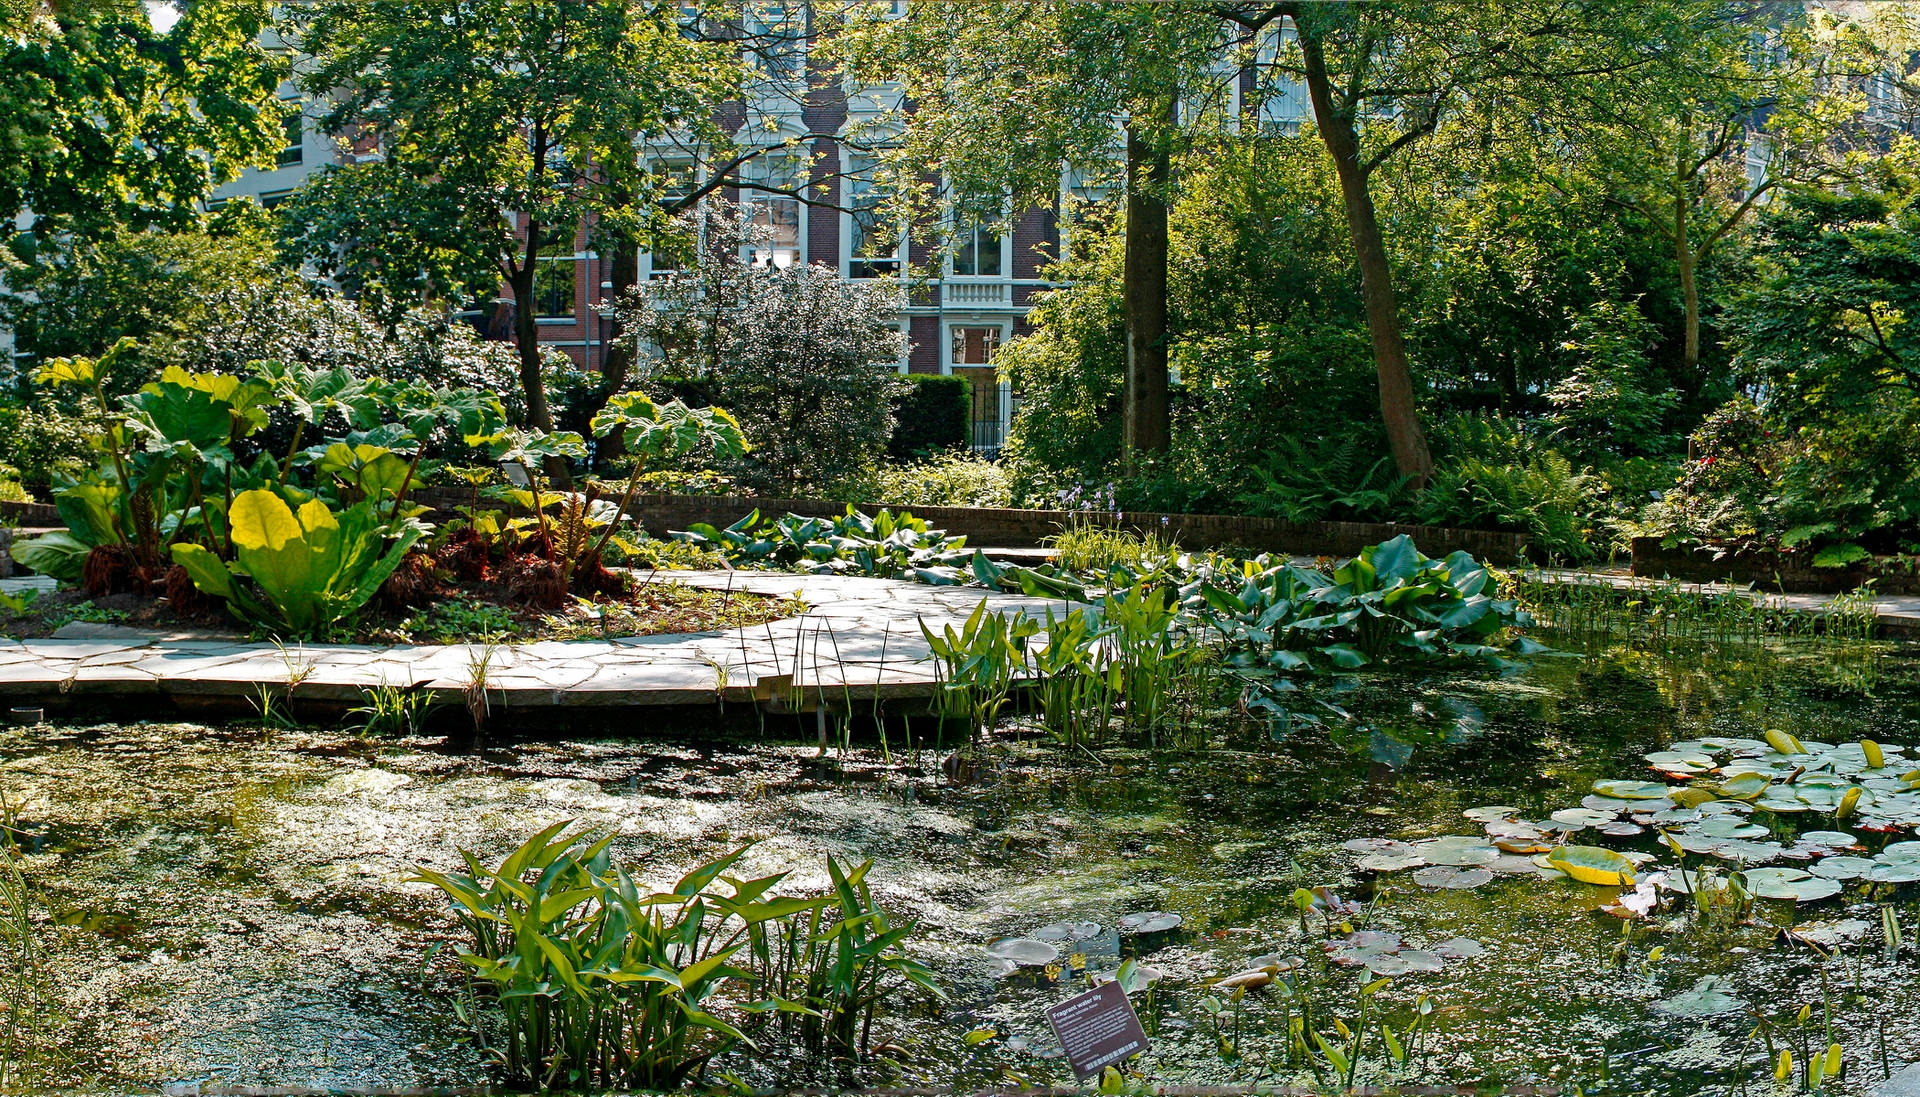 Amsterdam's Hortus Botanicus Background